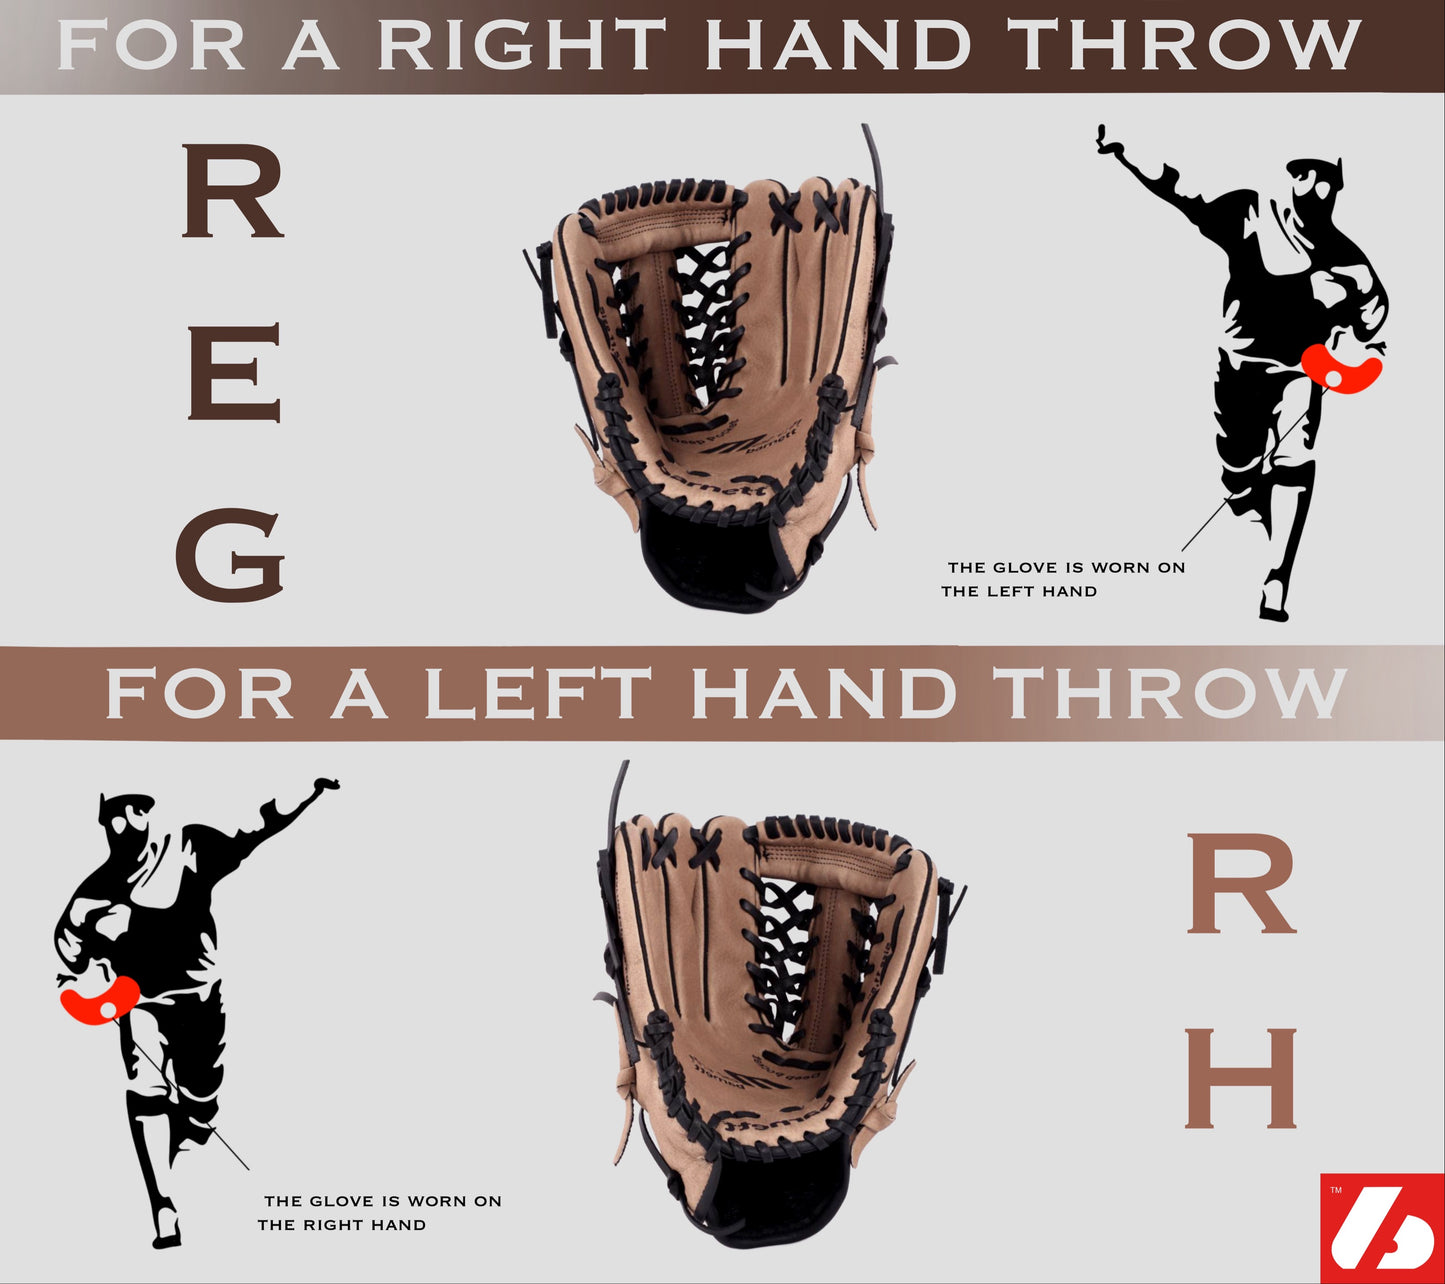 GL-120 Baseball Handschuh, Echtleder, Wettkampf, outfield Größe 12 (inch), braun